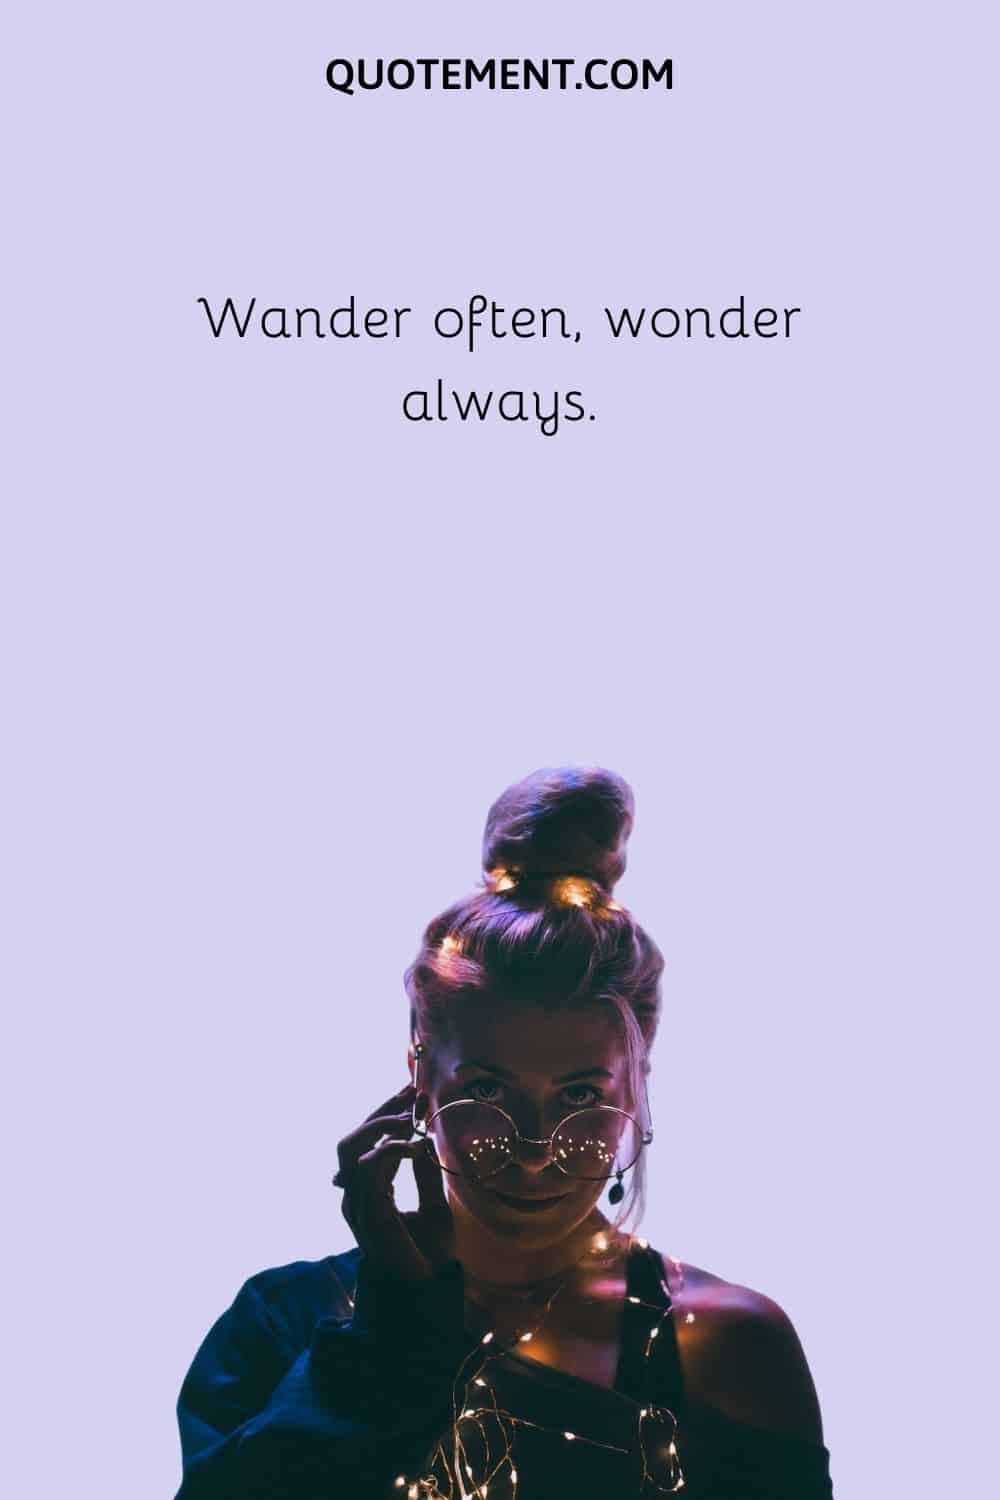 Wander often, wonder always